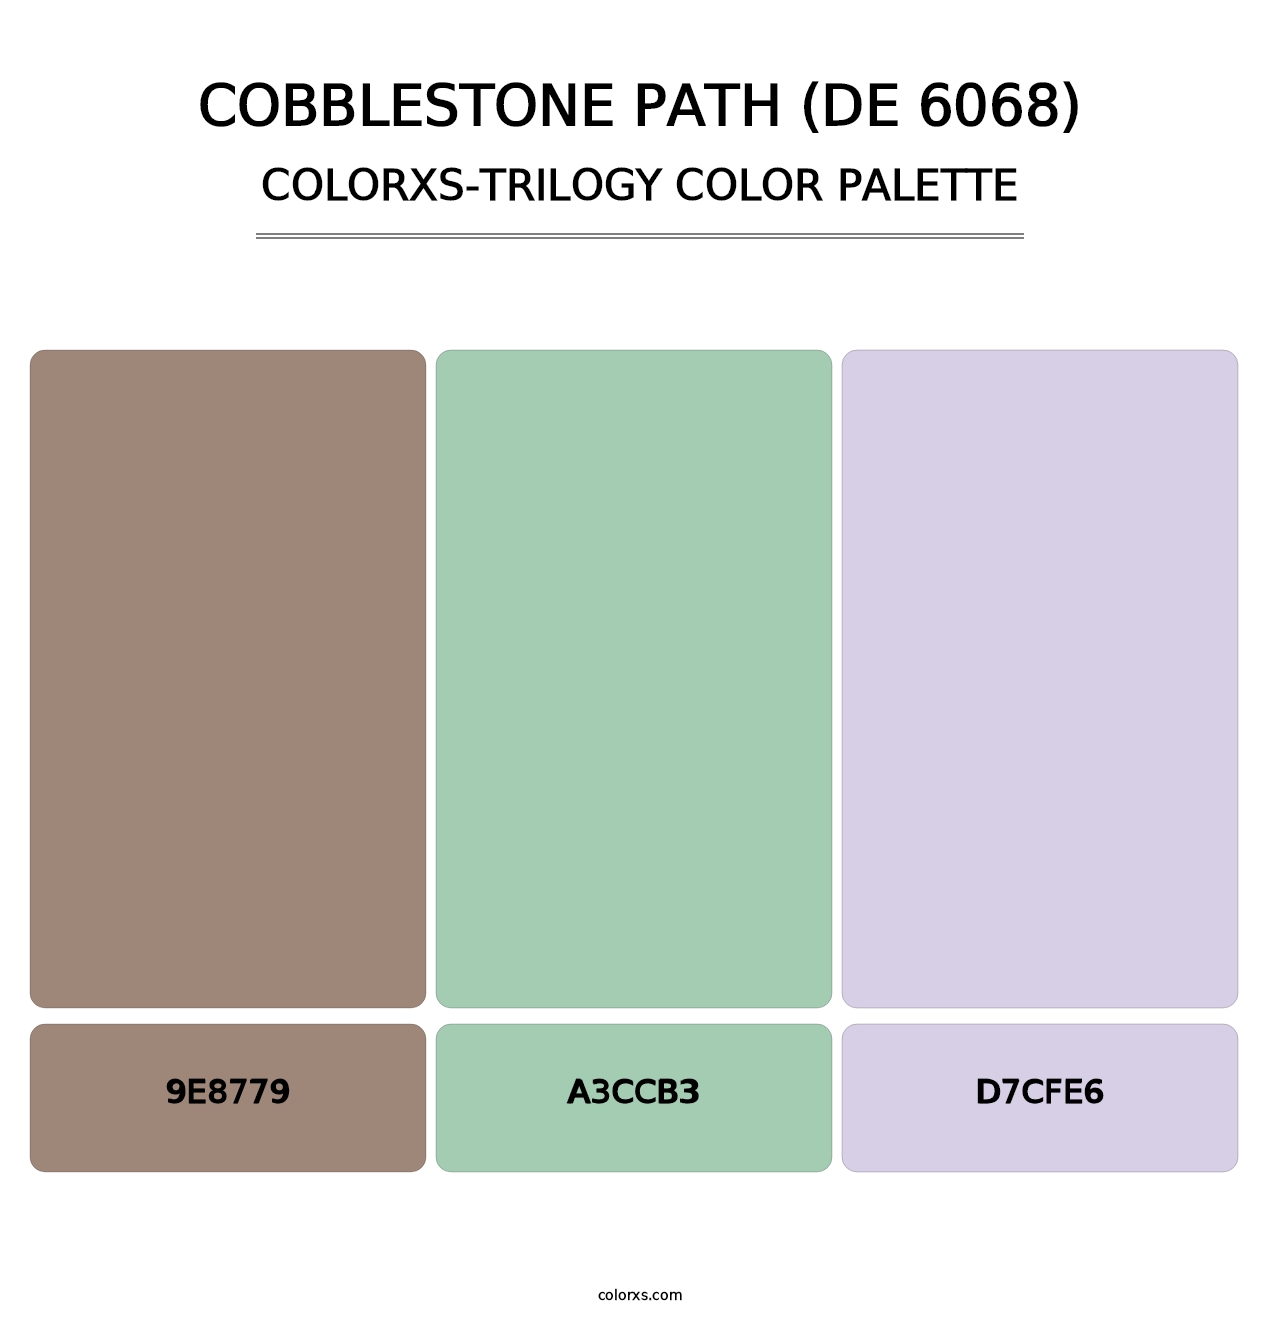 Cobblestone Path (DE 6068) - Colorxs Trilogy Palette